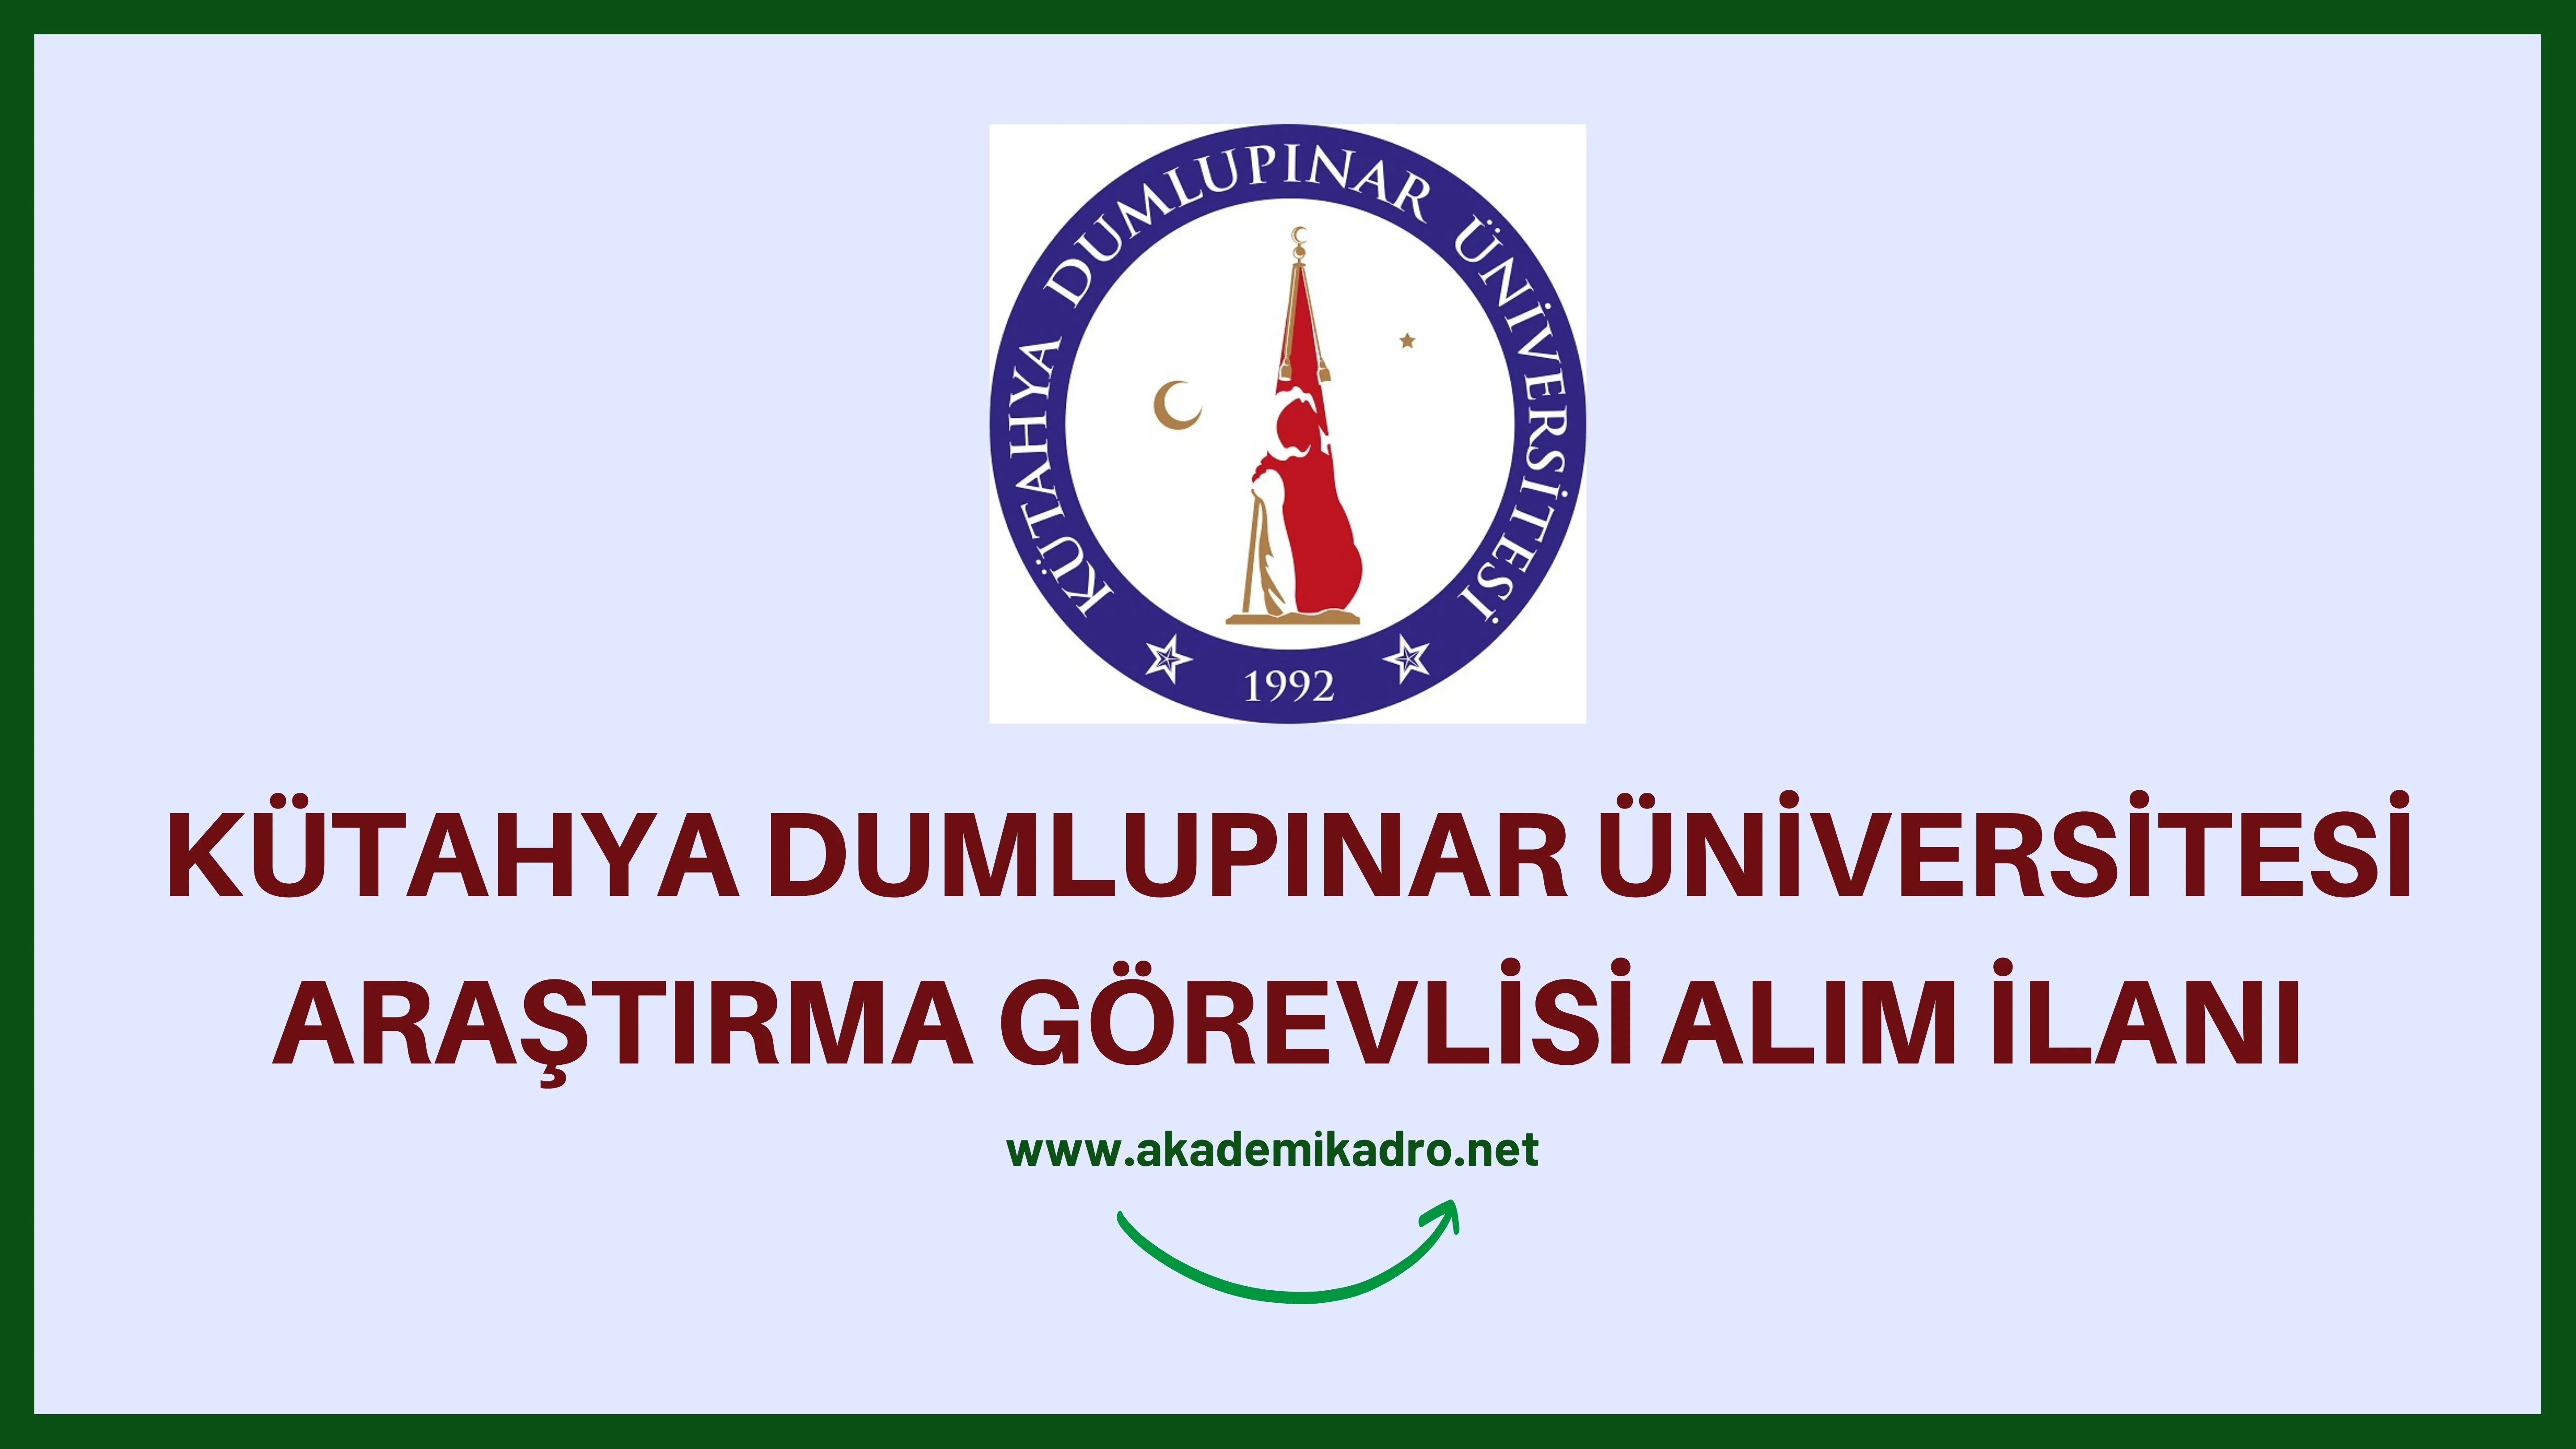 Kütahya Dumlupınar Üniversitesi 19 Araştırma görevlisi, 4 öğretim görevlisi ve öğretim üyesi alacaktır.